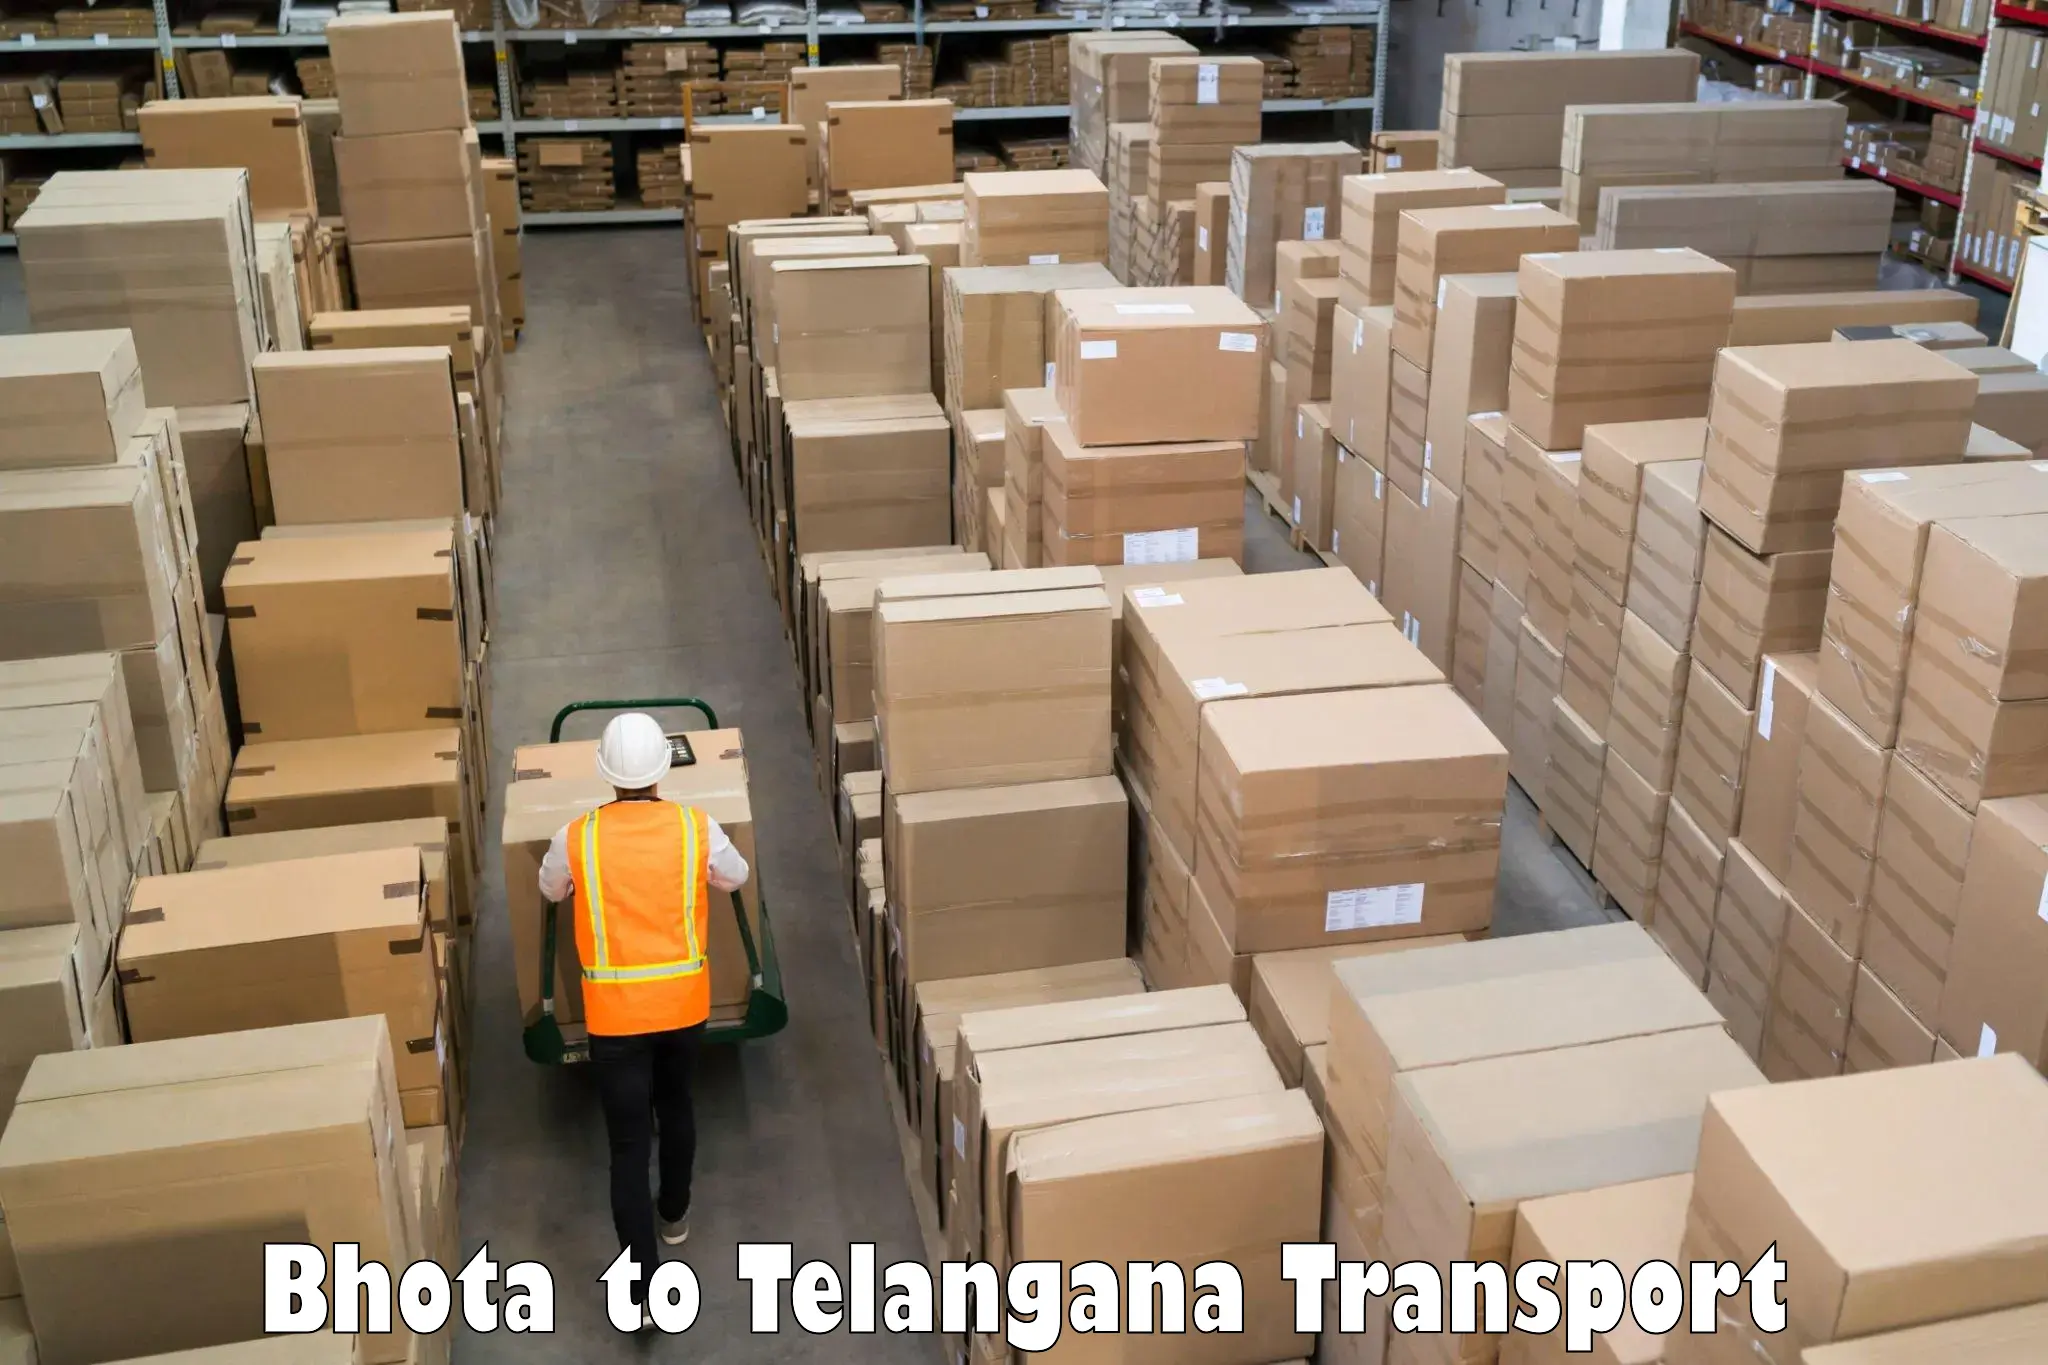 Truck transport companies in India Bhota to Vikarabad